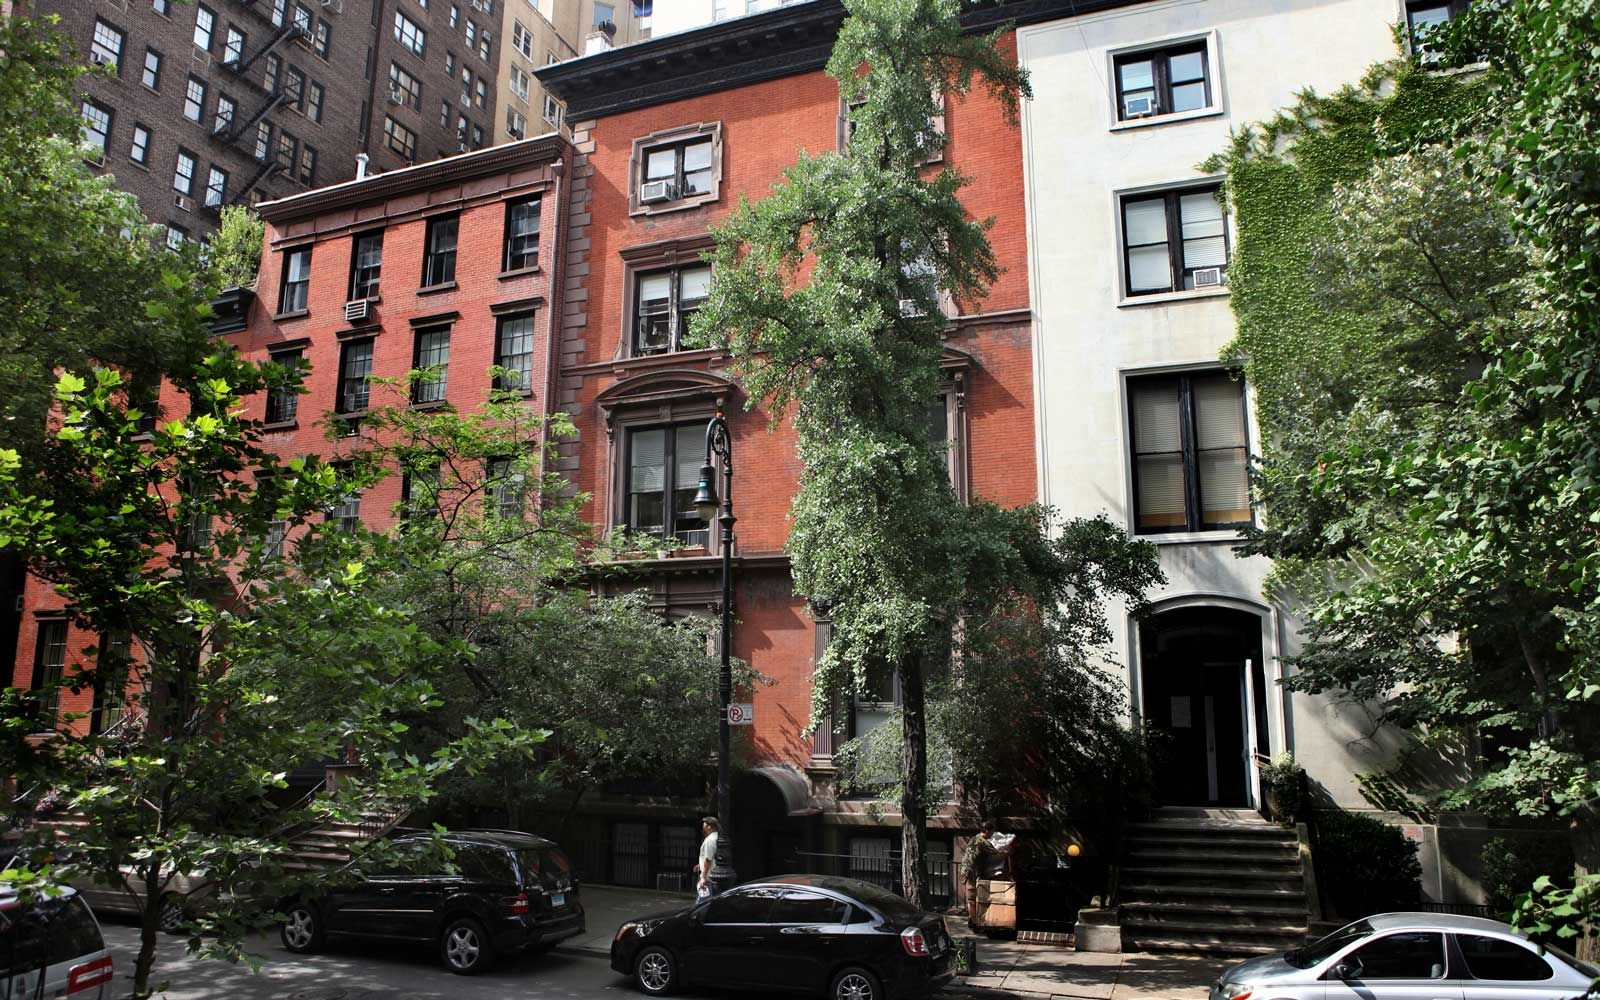 U bastimentu rossu in u centru hè 14 West 10th Street in Greenwich Village, induve Mark Twain hà campatu in u 1900 à u 1901, in New York.